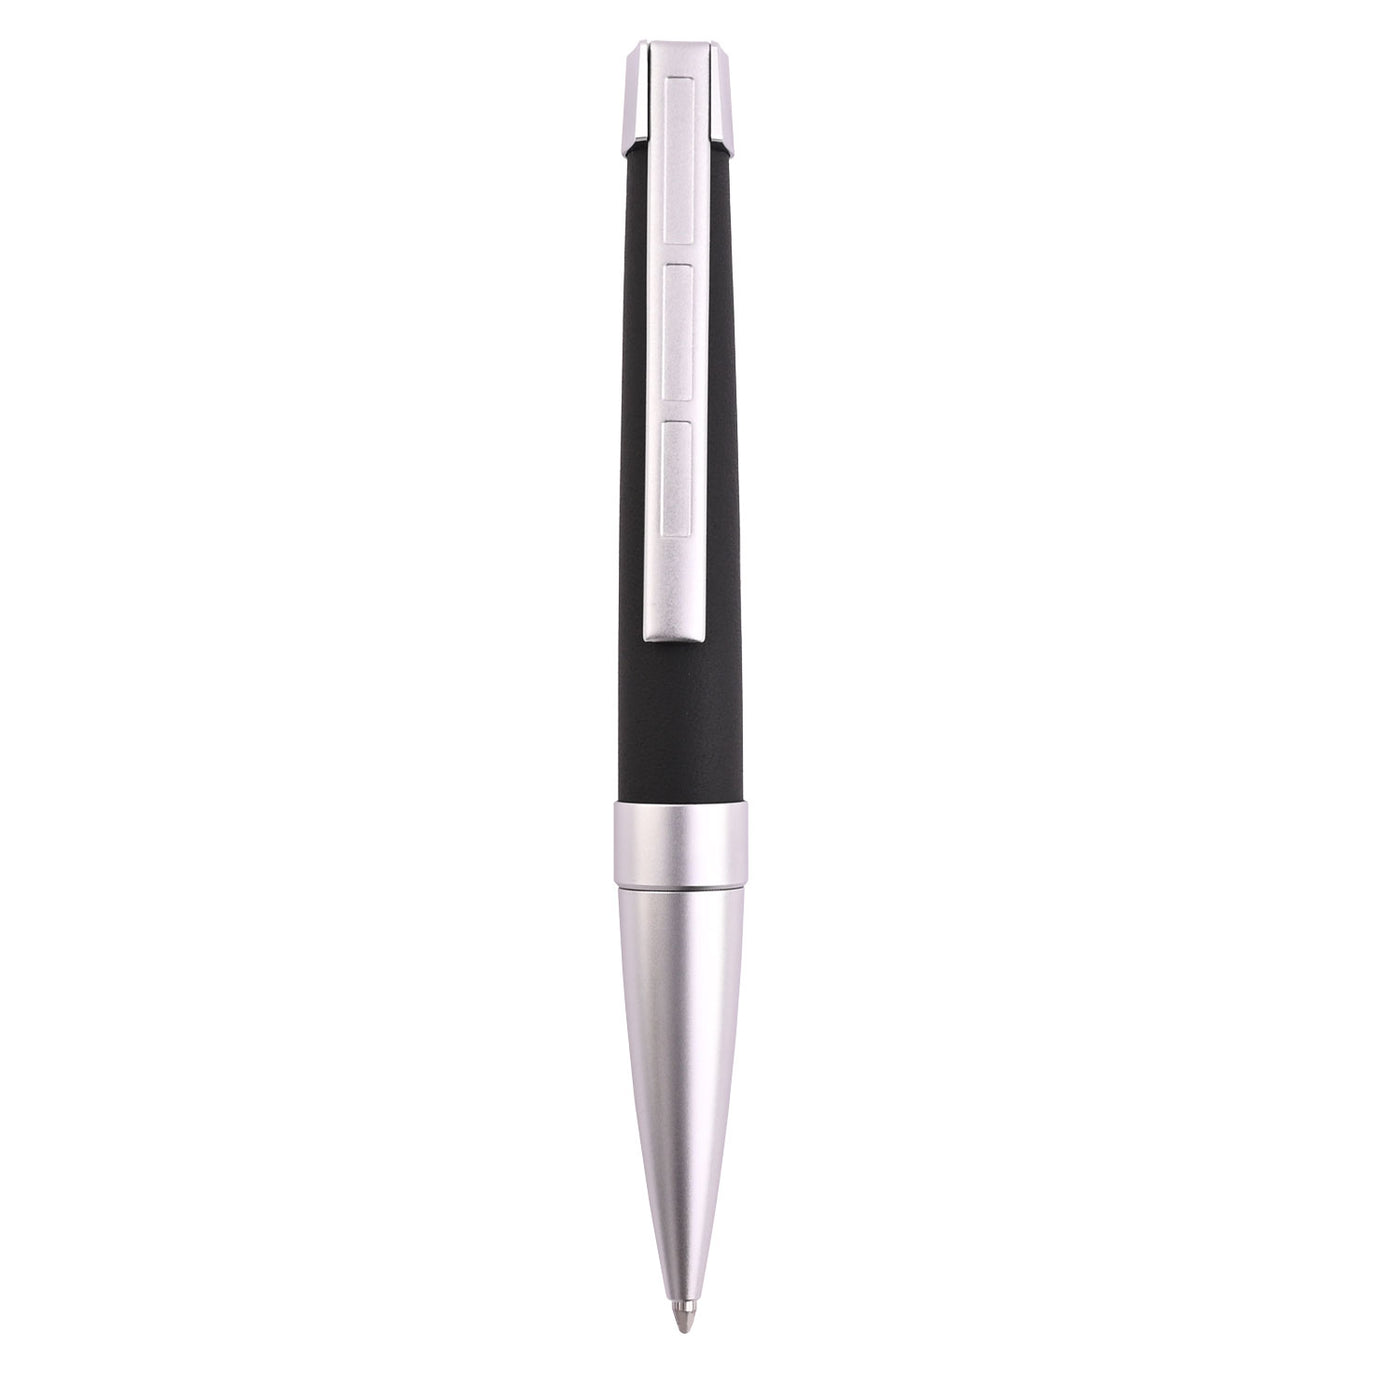 Staedtler Premium Corium Simplex Ball Pen - Anthracite Leather CT 3